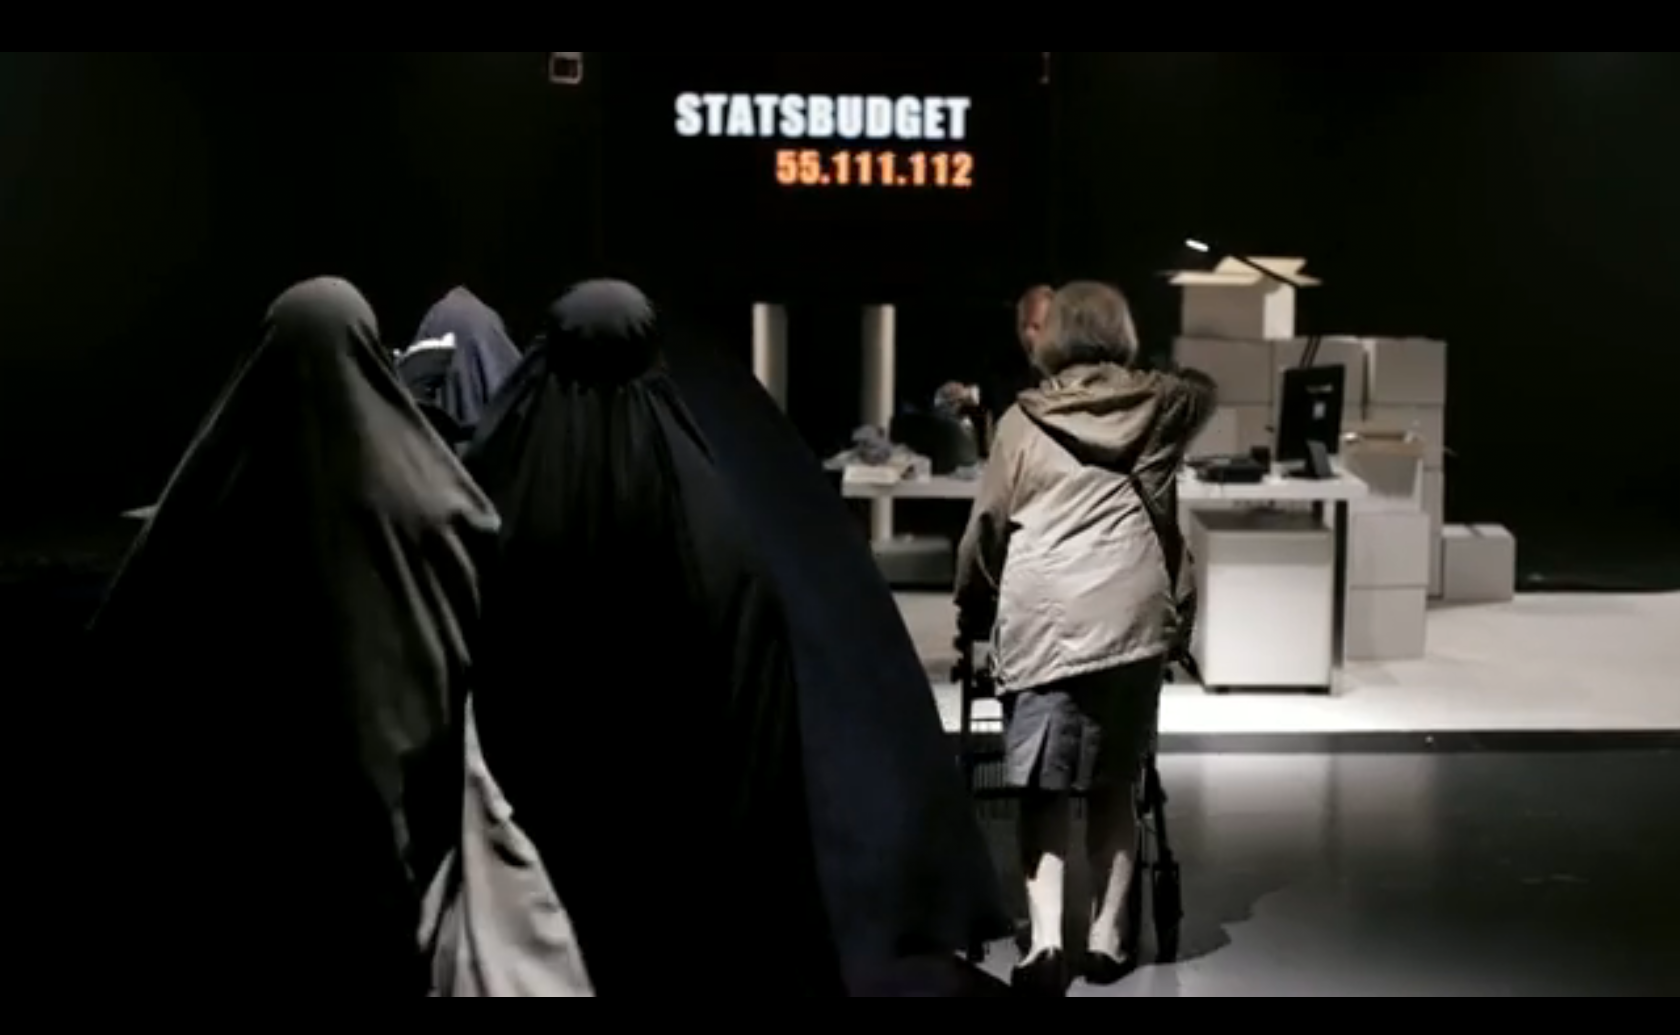 "Välj invandringsbroms före pensionsbroms" säger sd i sin reklamfilm.